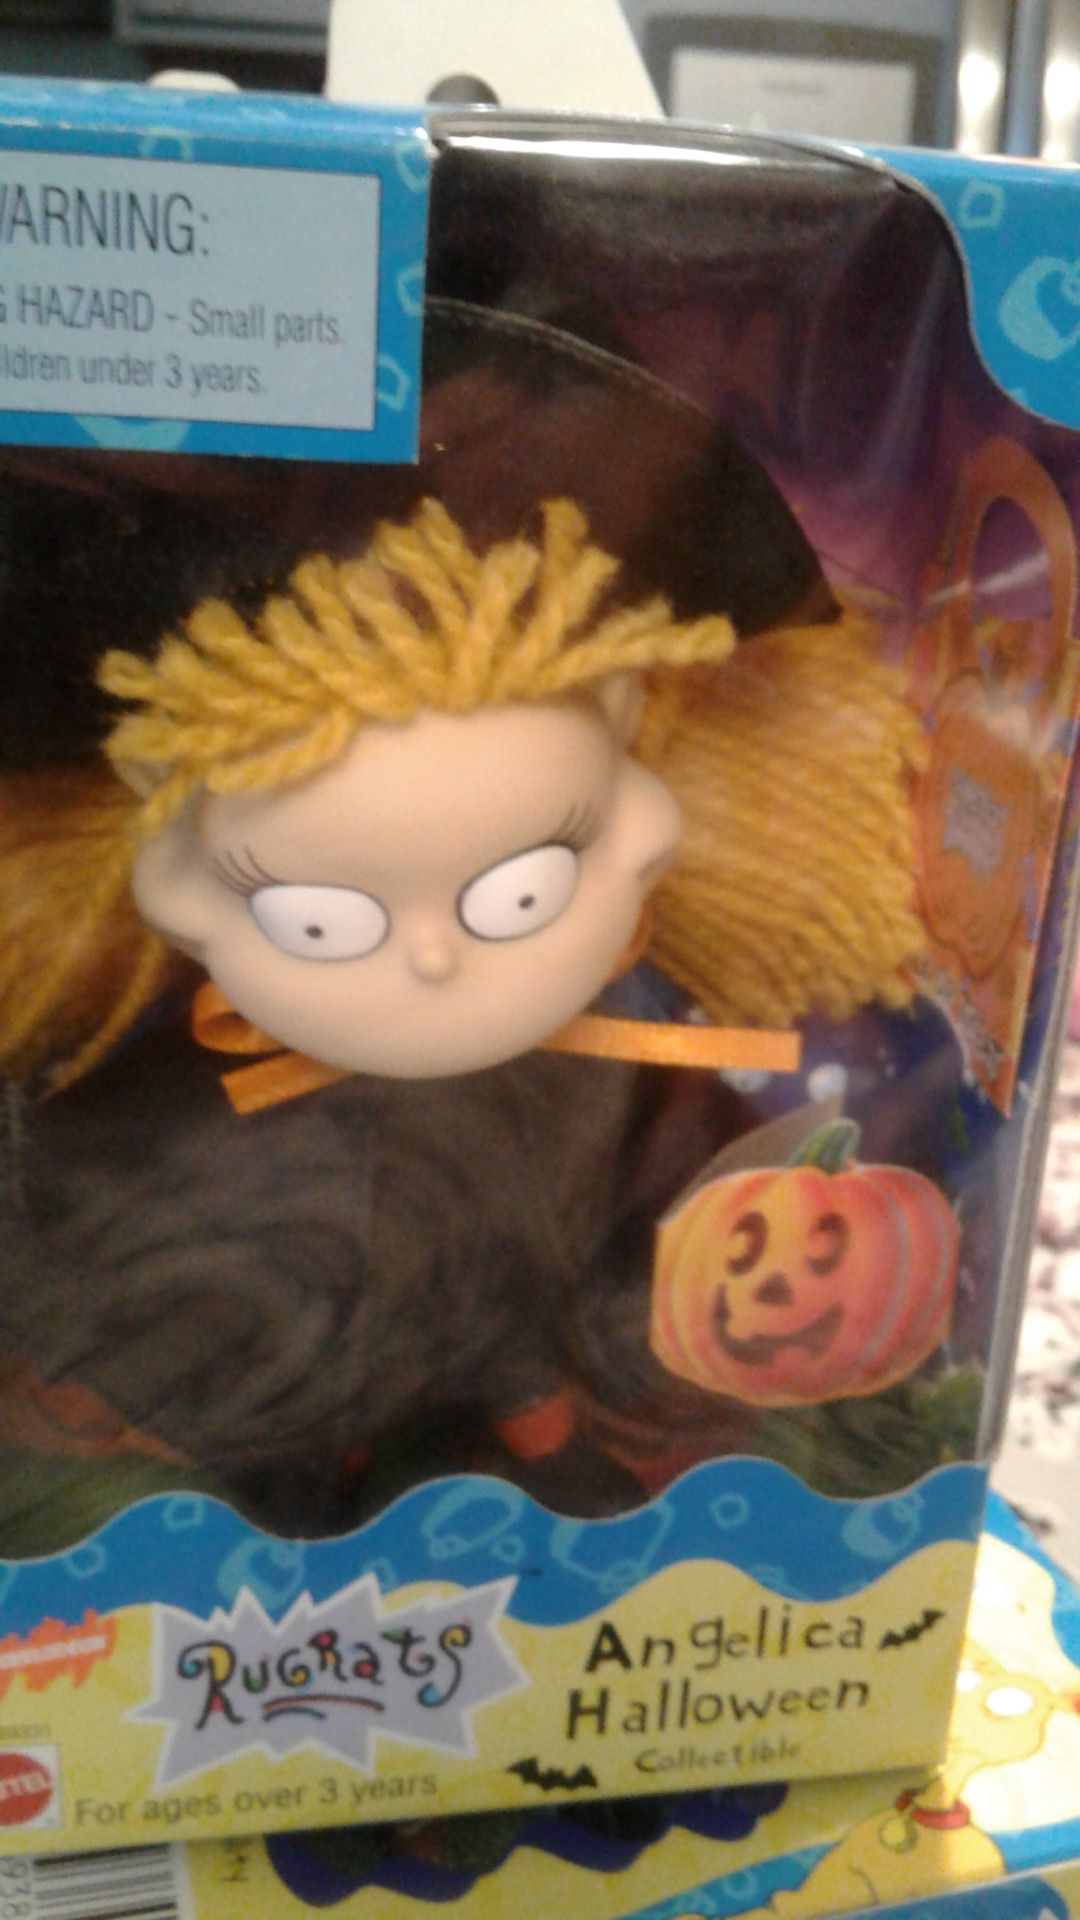 Rugrats Halloween Angelica